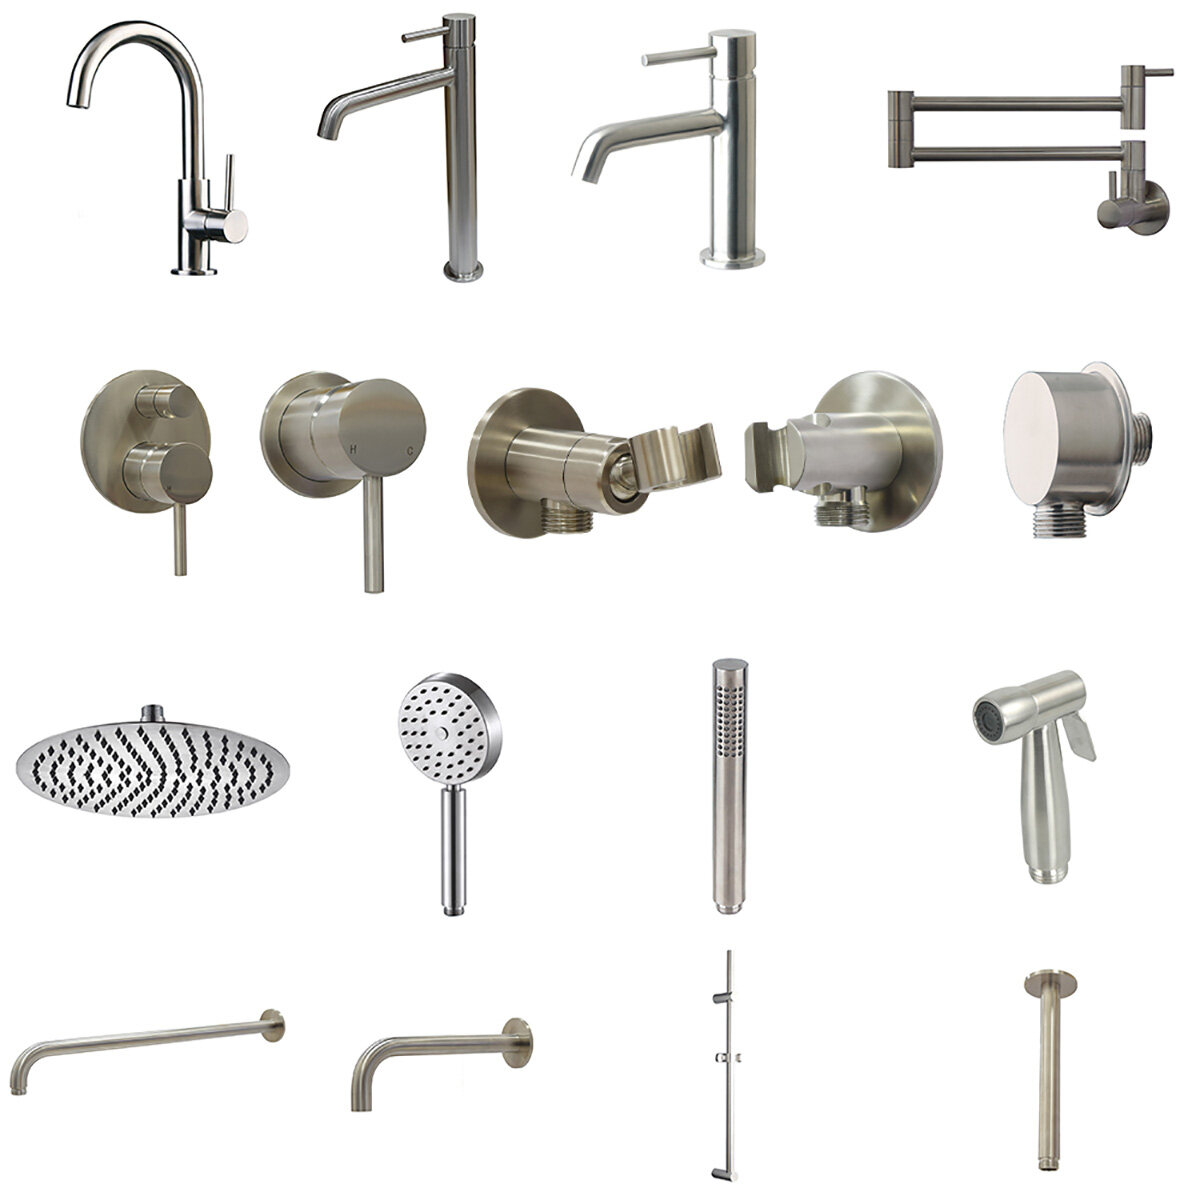 best wall mounted bath shower mixer factories supplier manufacturers